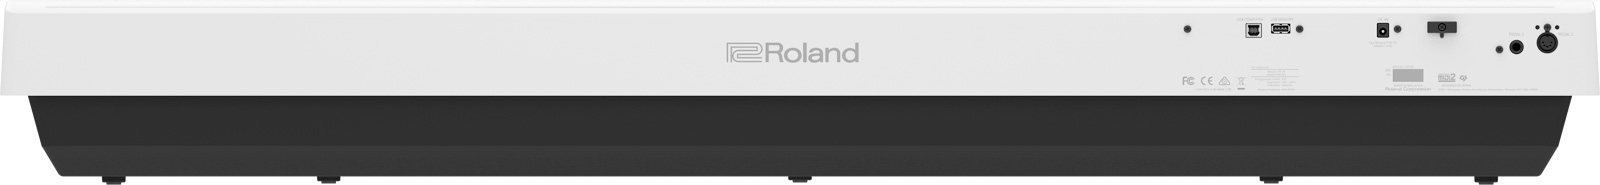 Connectique piano numérique Roland FP-30